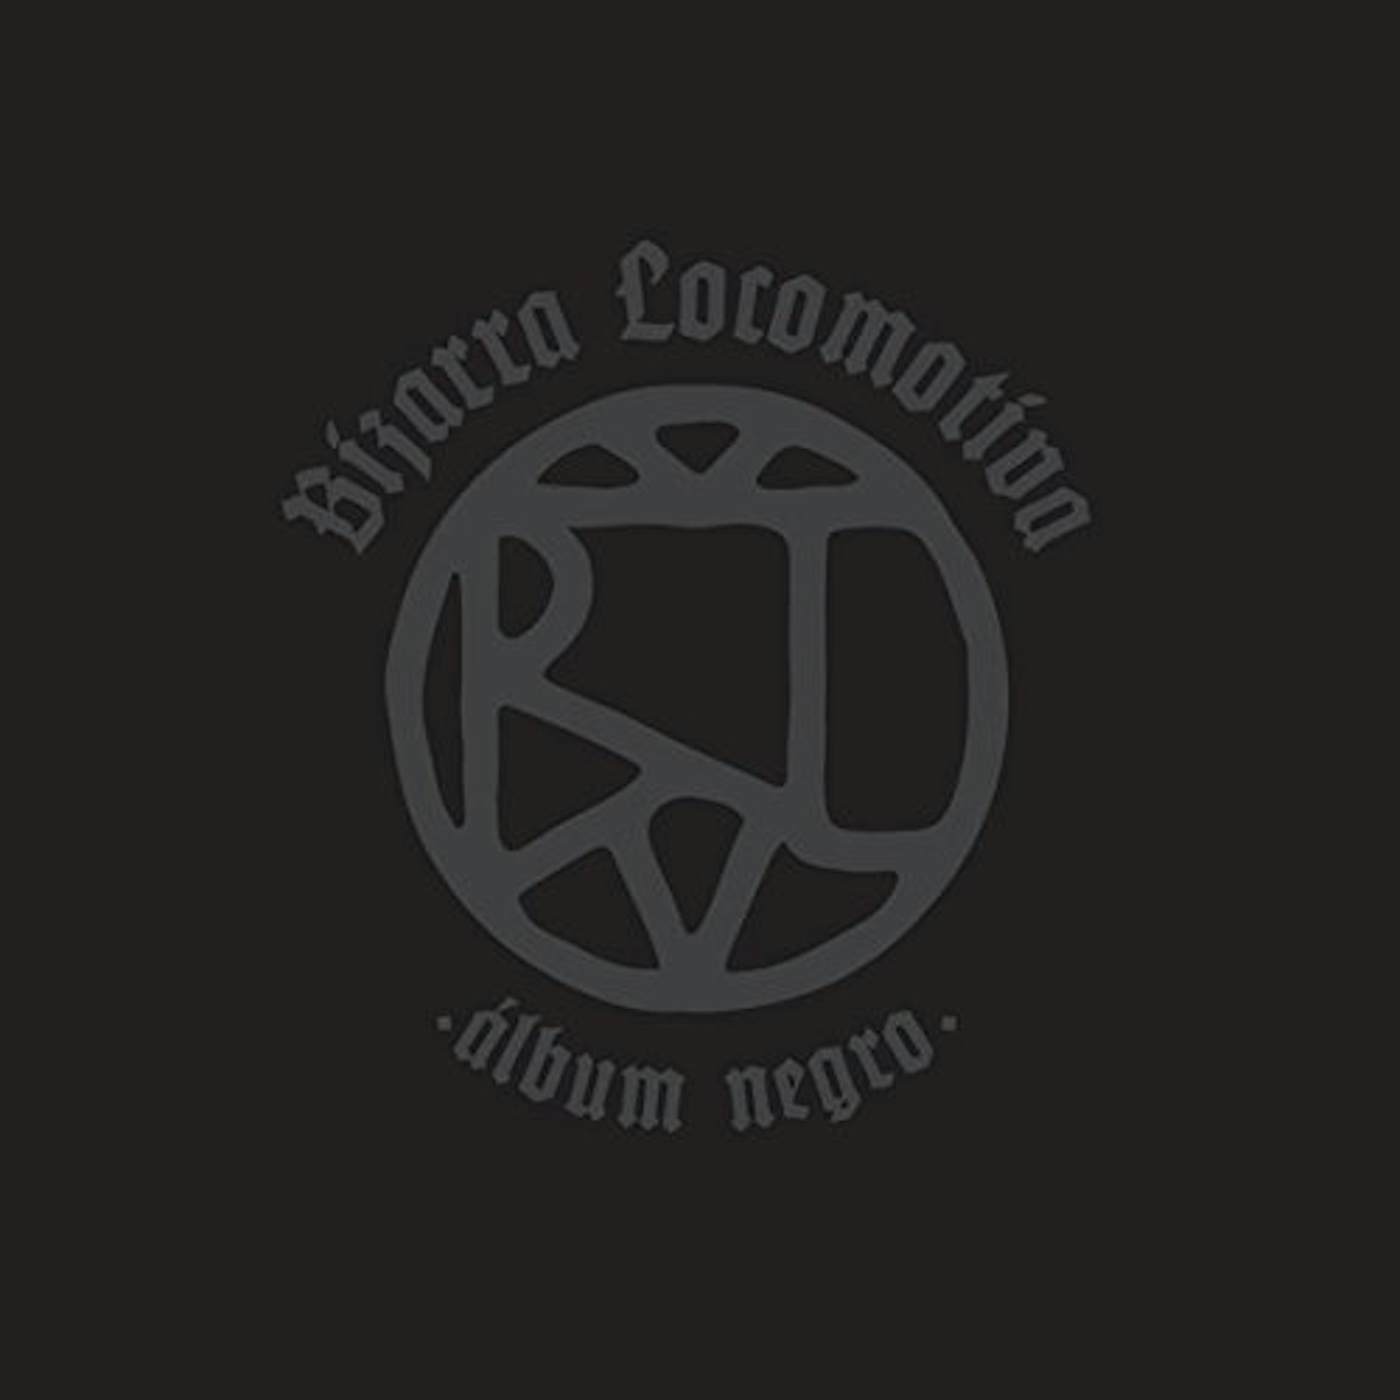 Bizarra Locomotiva ALBUM NEGRO / BLACK ALBUM Vinyl Record